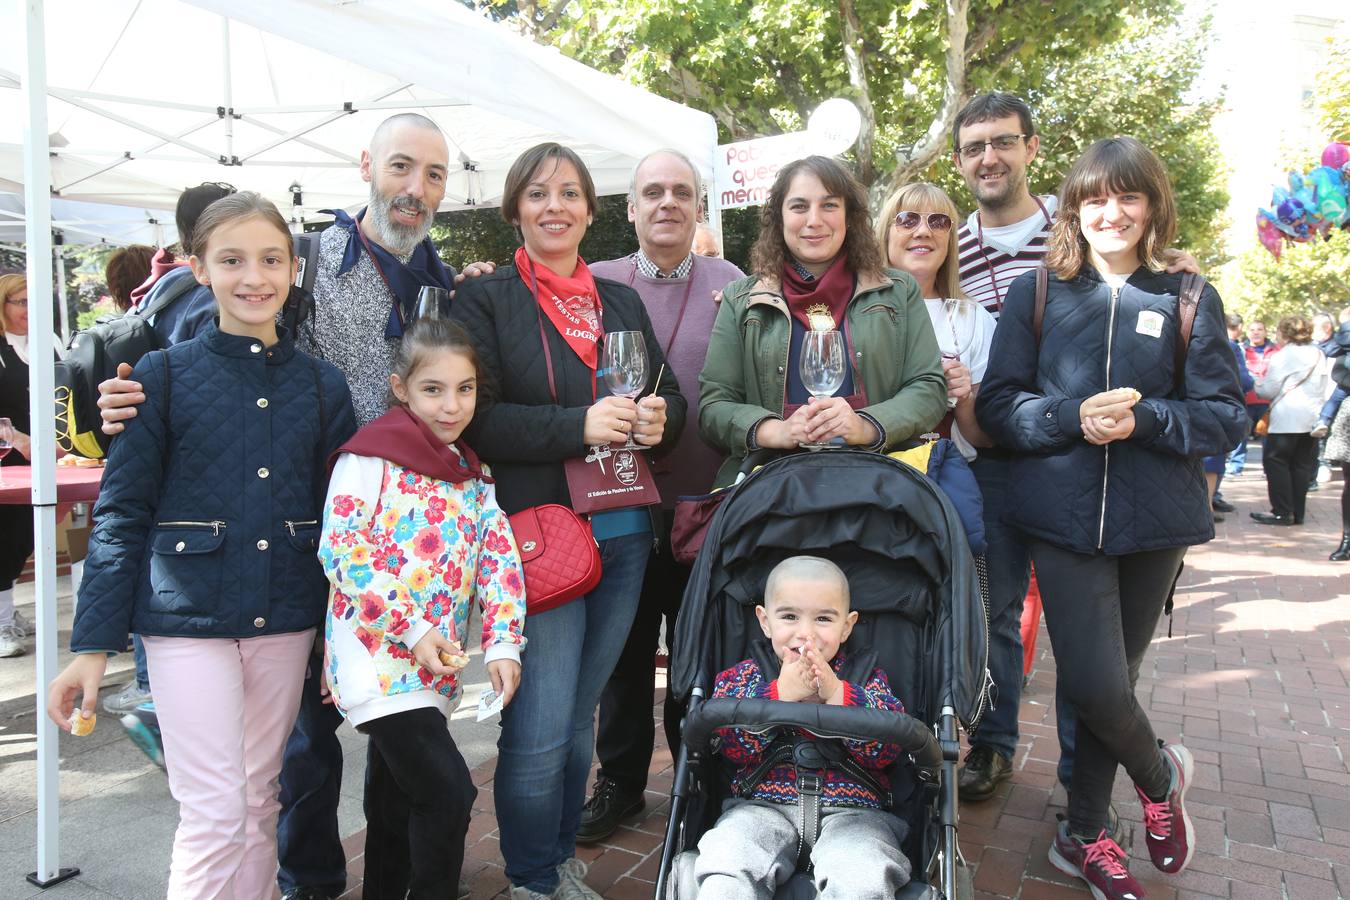 La federación de peñas de Logroño celebró en El Espolón la degustación de vinos y pinchos